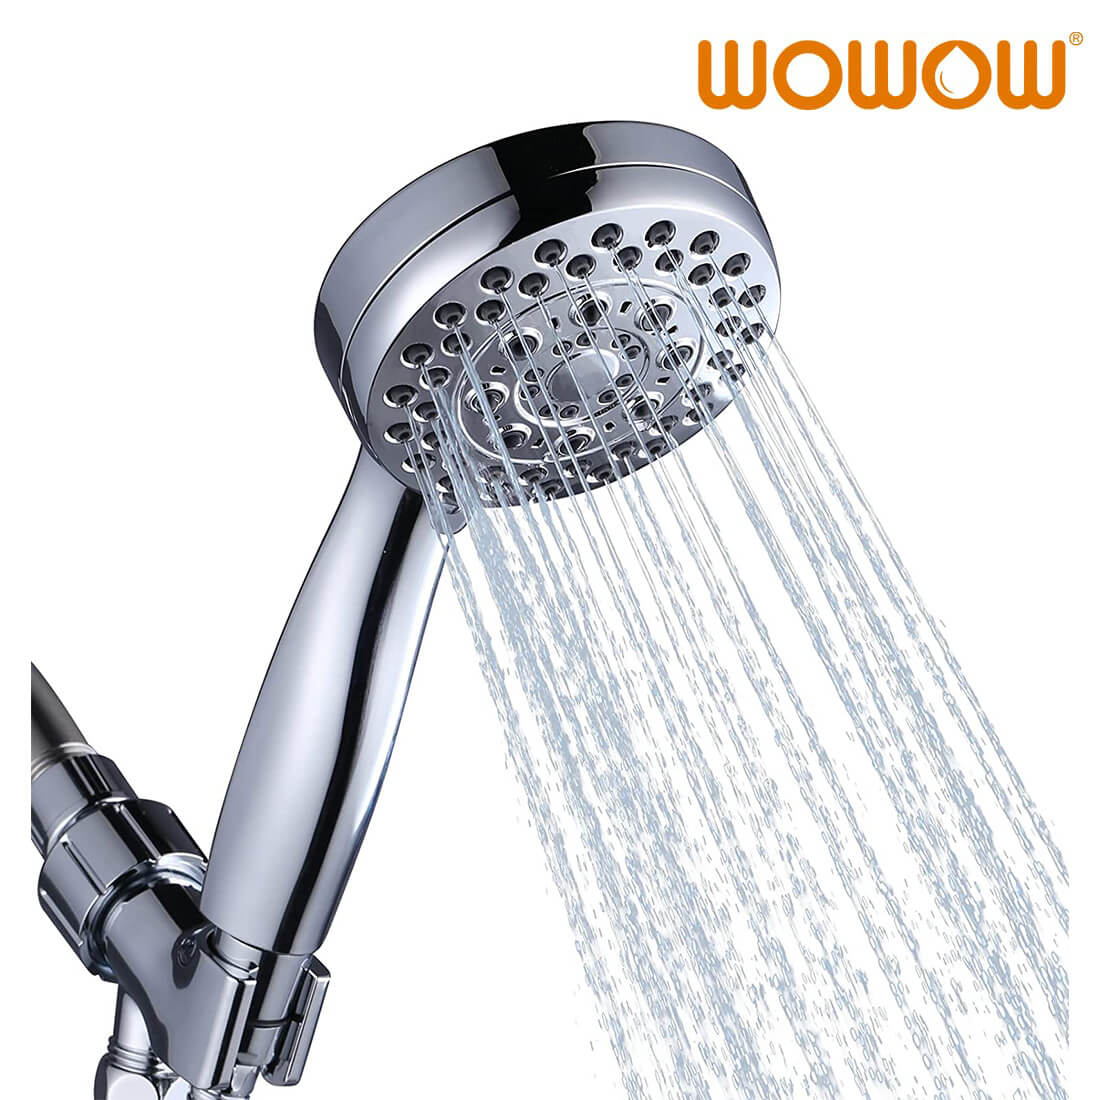 Wowow capçal de dutxa cromat d'alta pressió de 5 posicions amb mà